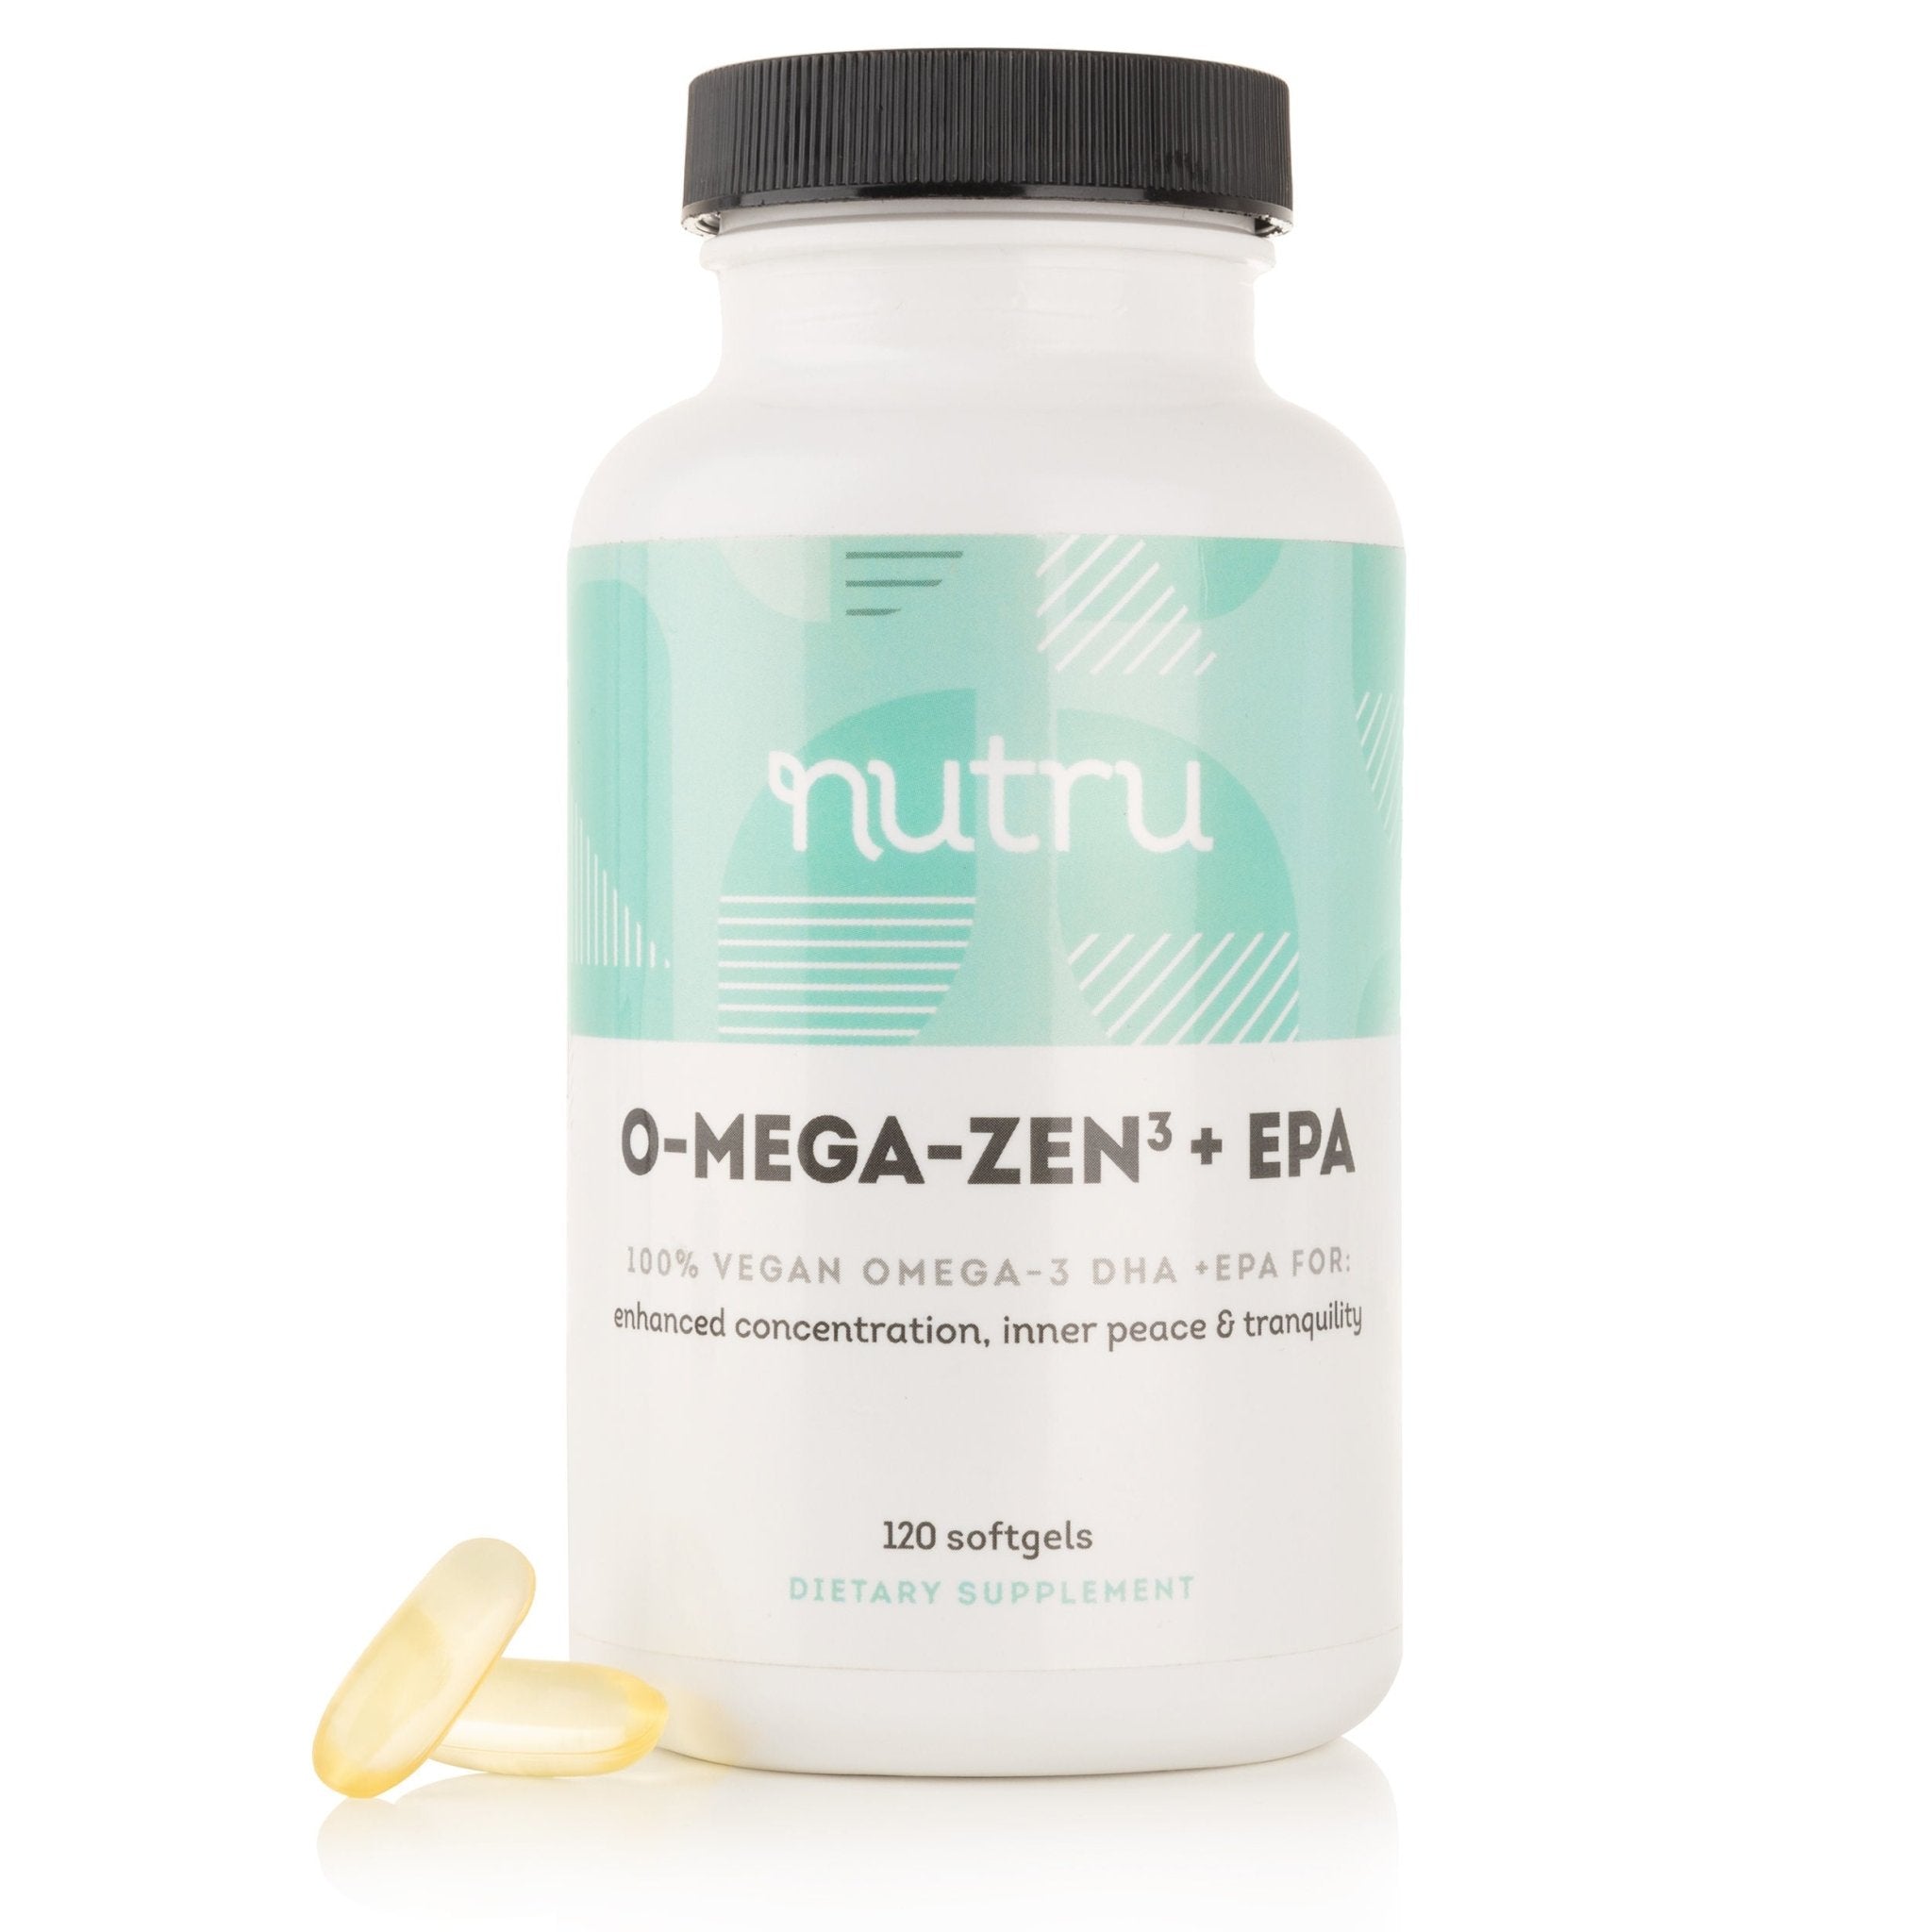 O-Mega-Zen3 Vegan + EPA Supplement, 120 softgels